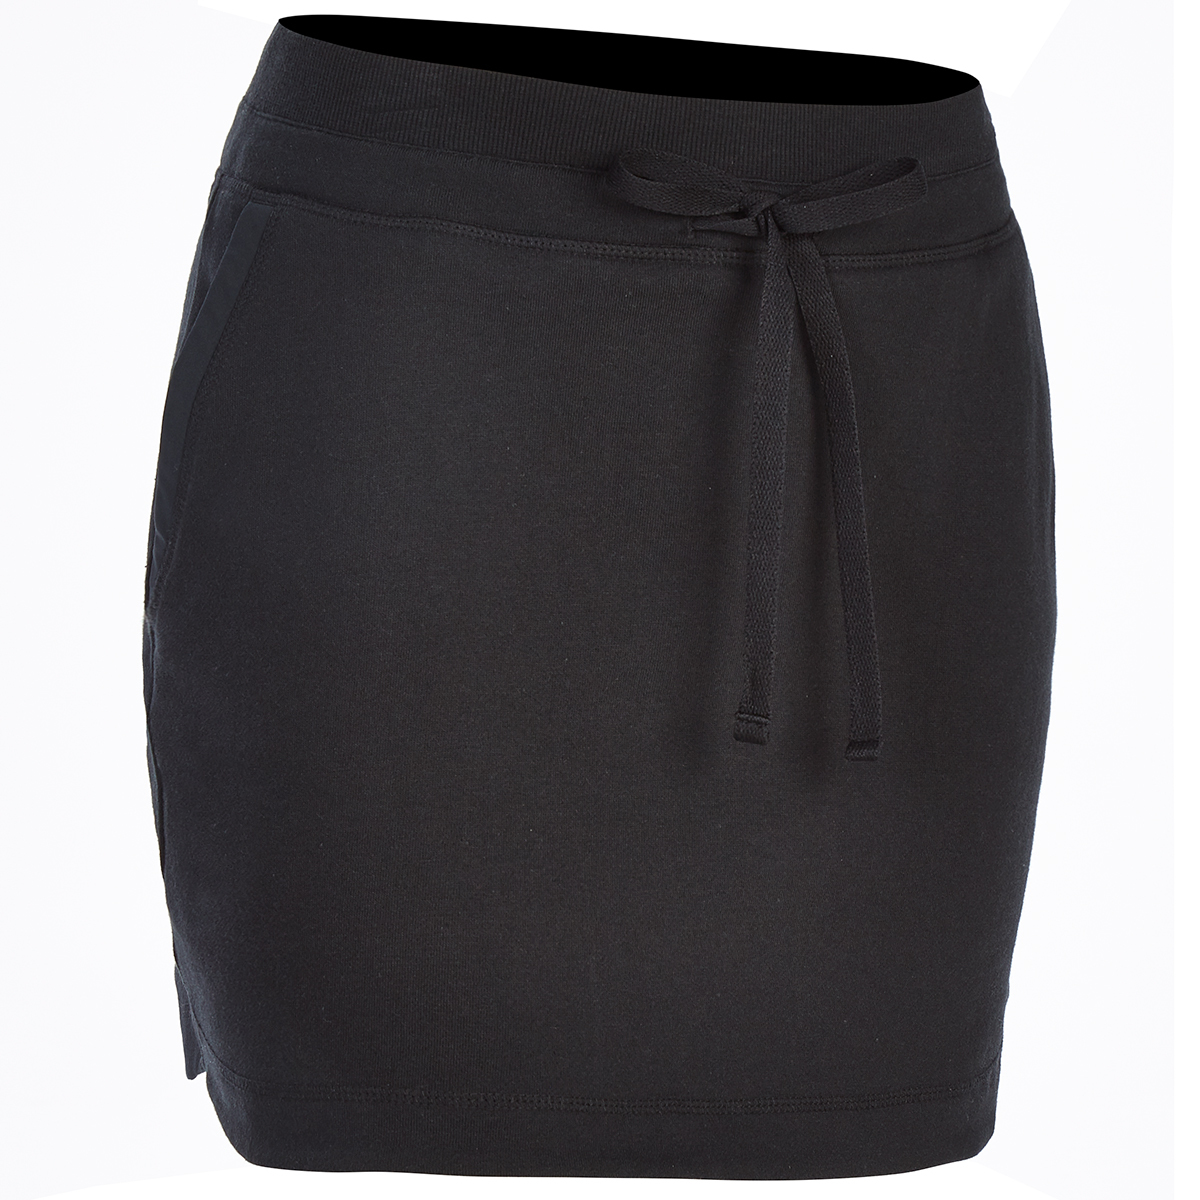 Ems Women's Canyon Knit Skirt - Black, L